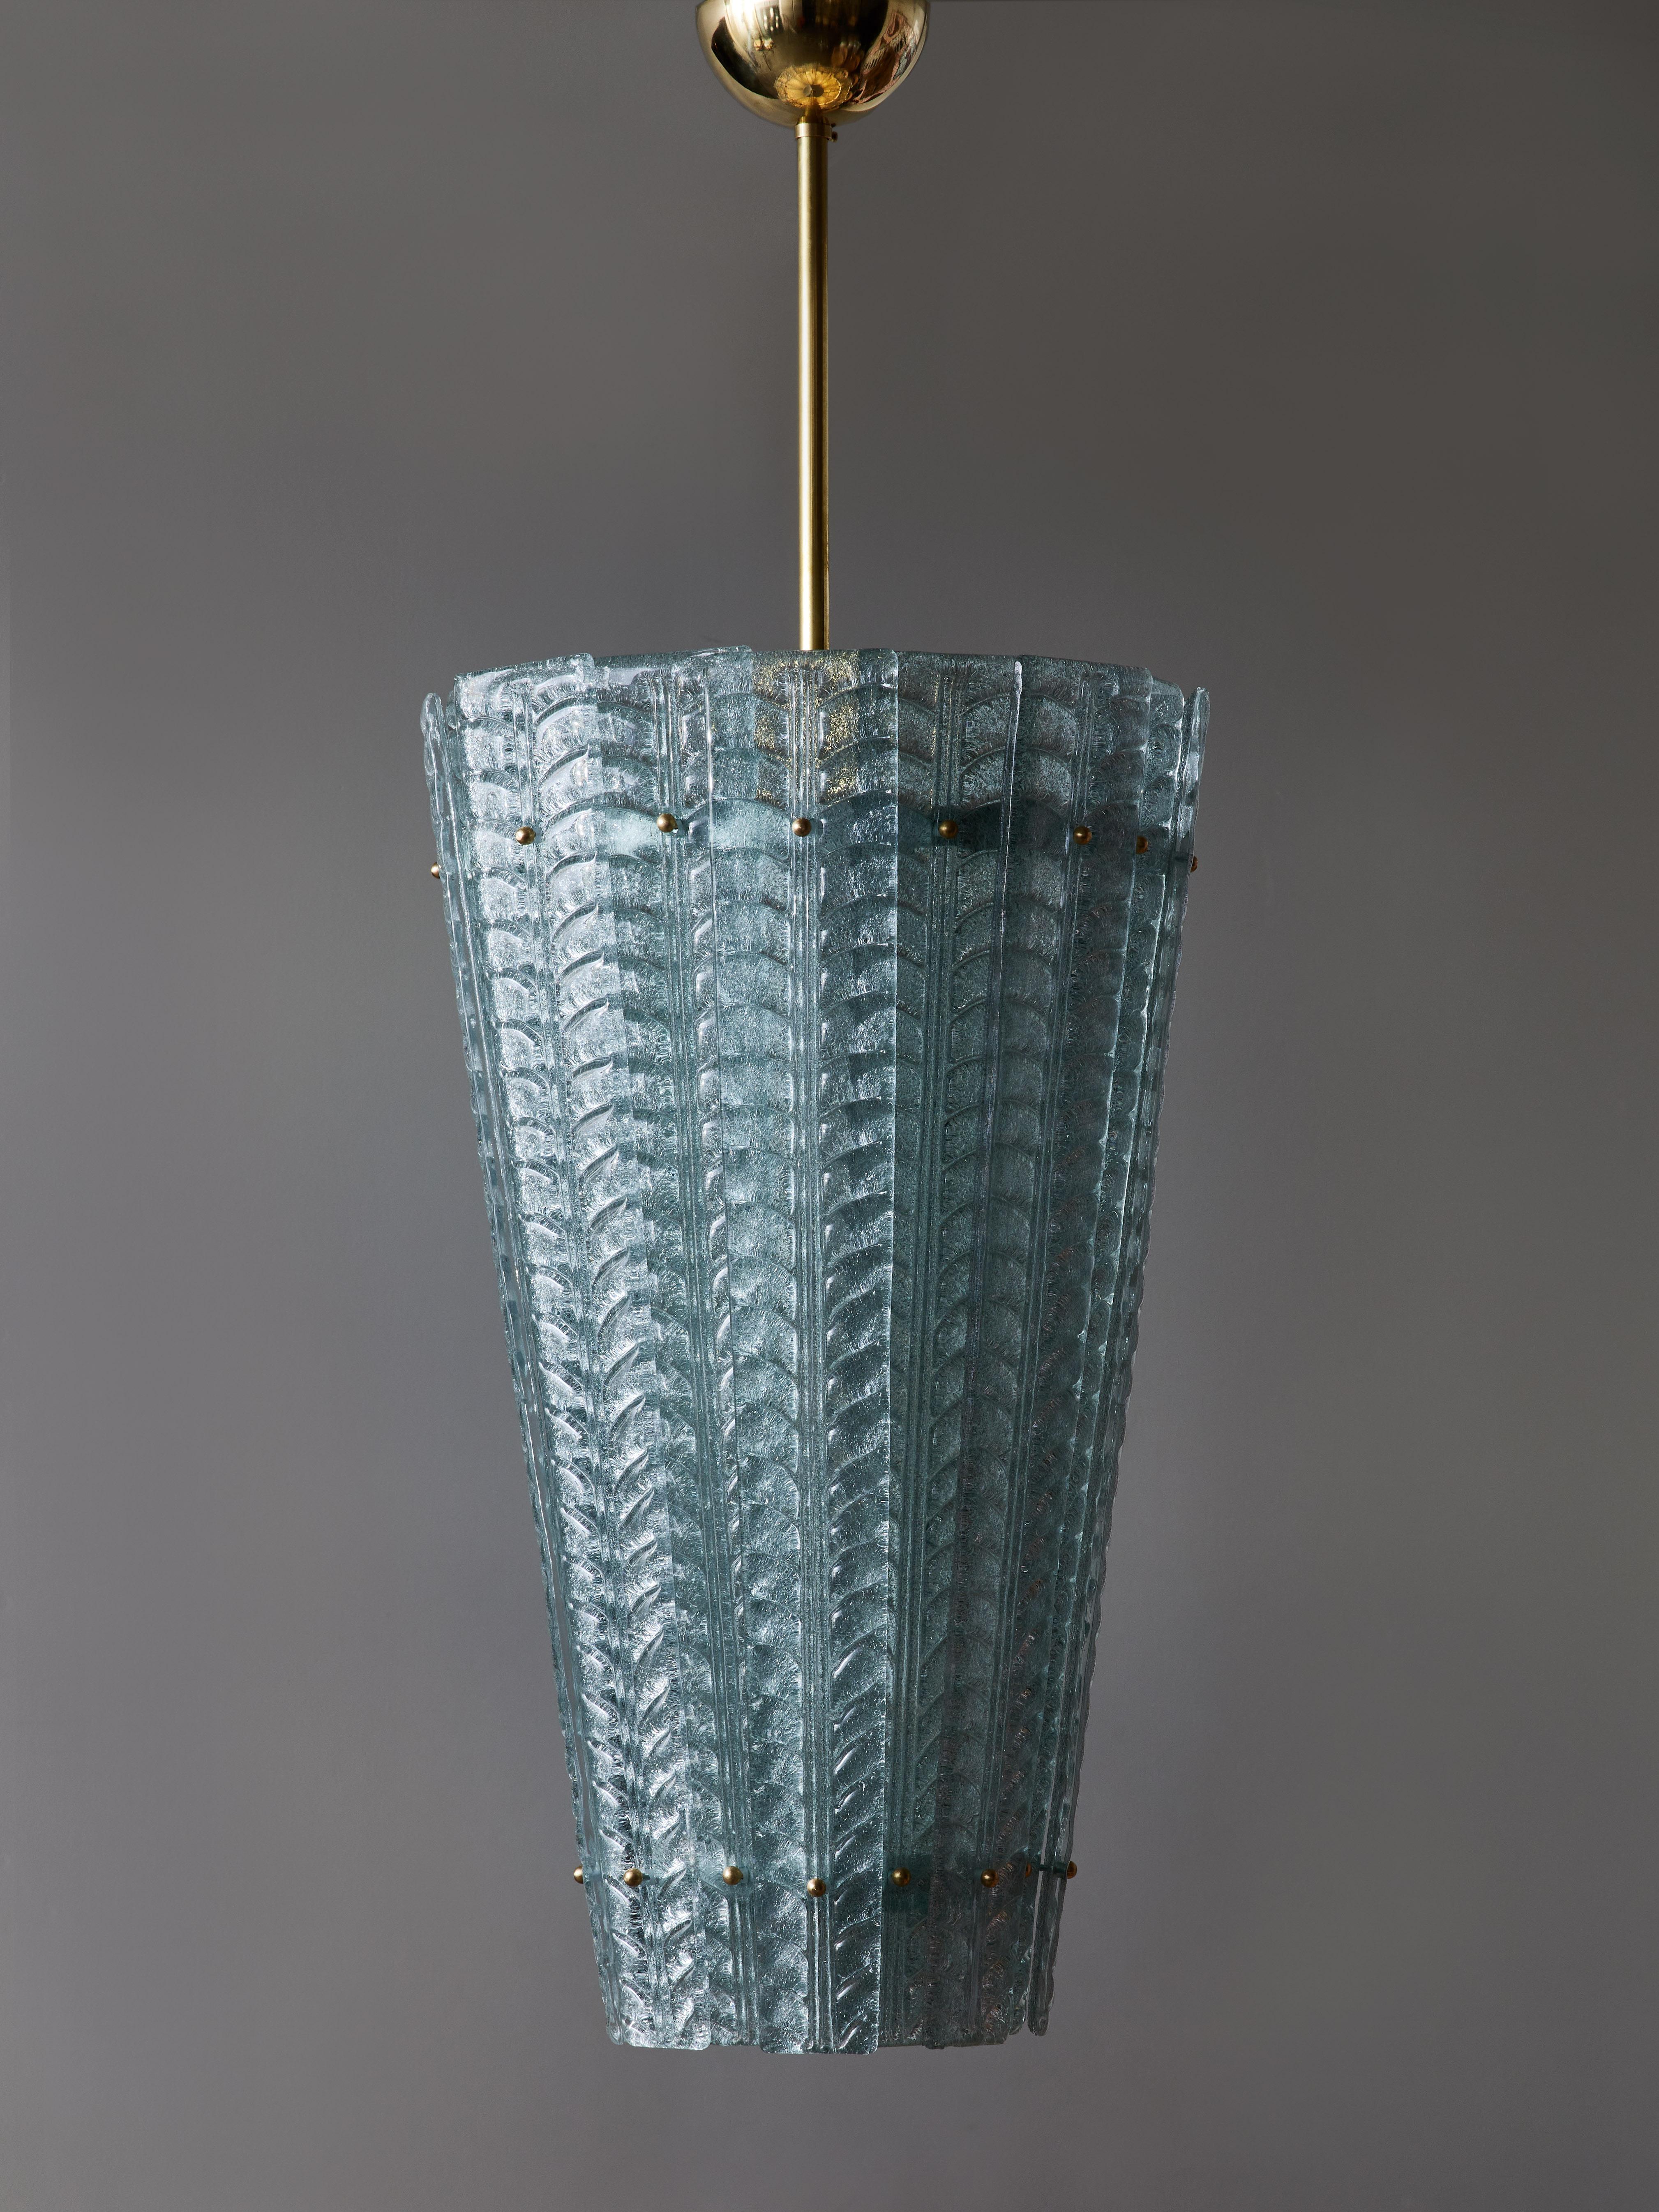 Laterne mit Messingstruktur und zentralem Stiel, der mit Murano-Glasplatten bedeckt ist, die sich gegenseitig überlappen. Jedes Glasteil ist mit Blättermotiven geprägt und die gesamte Platte ist aus klarem Teeblau.